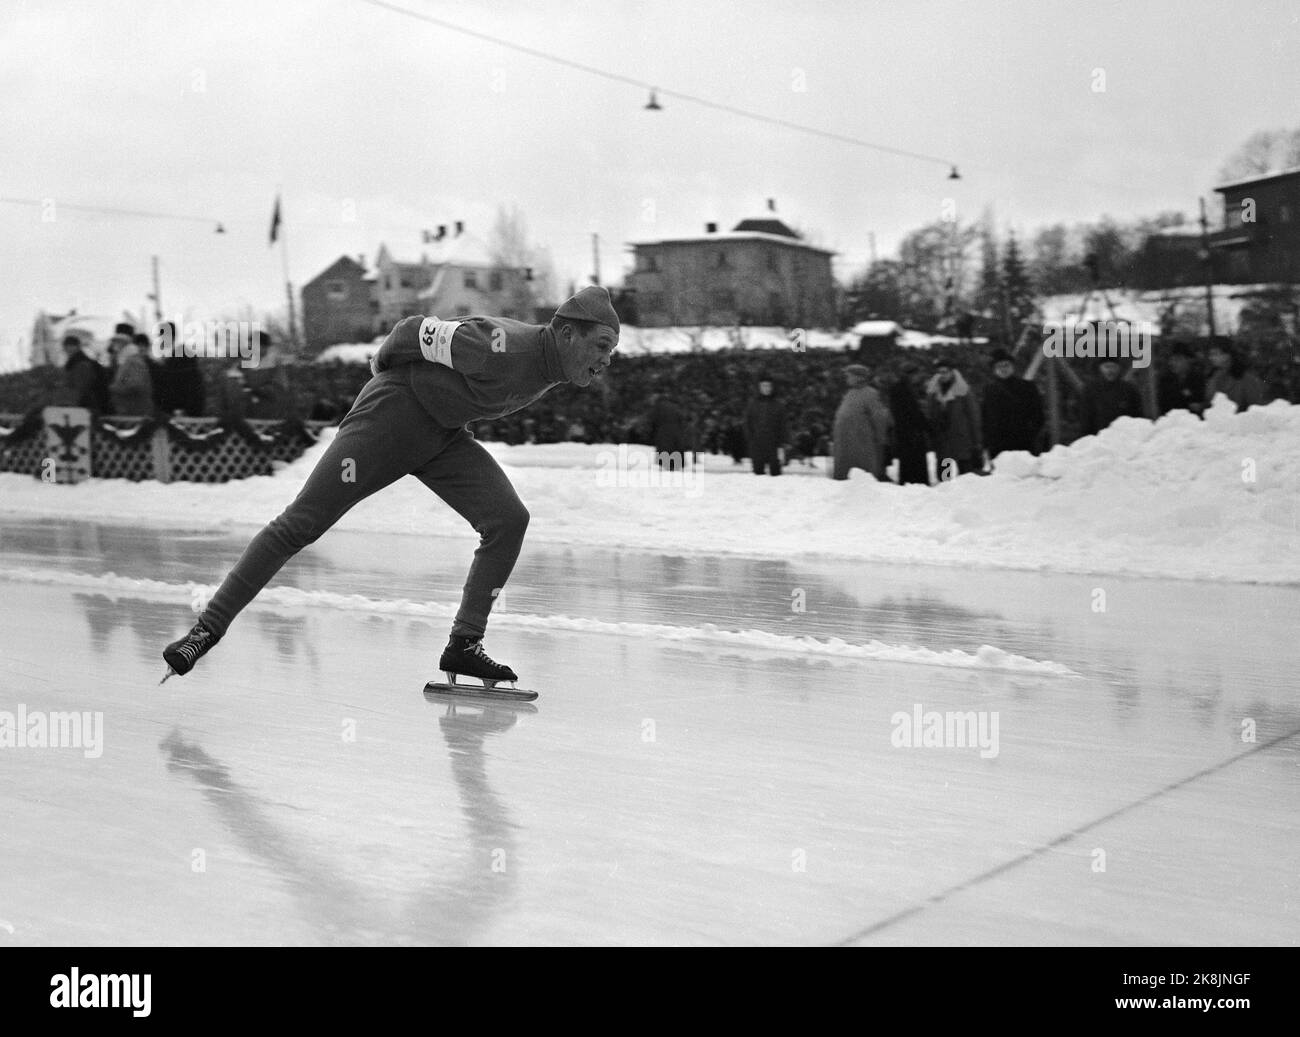 Campionato europeo Hamar 19530201 / Campionati europei di pattinaggio / corse veloci. Atleta finlandese Toivo Salonen che ha vinto 500 metri, in azione (ma probabilmente non in lontananza ha vinto). Foto: NTB / NTB Foto Stock